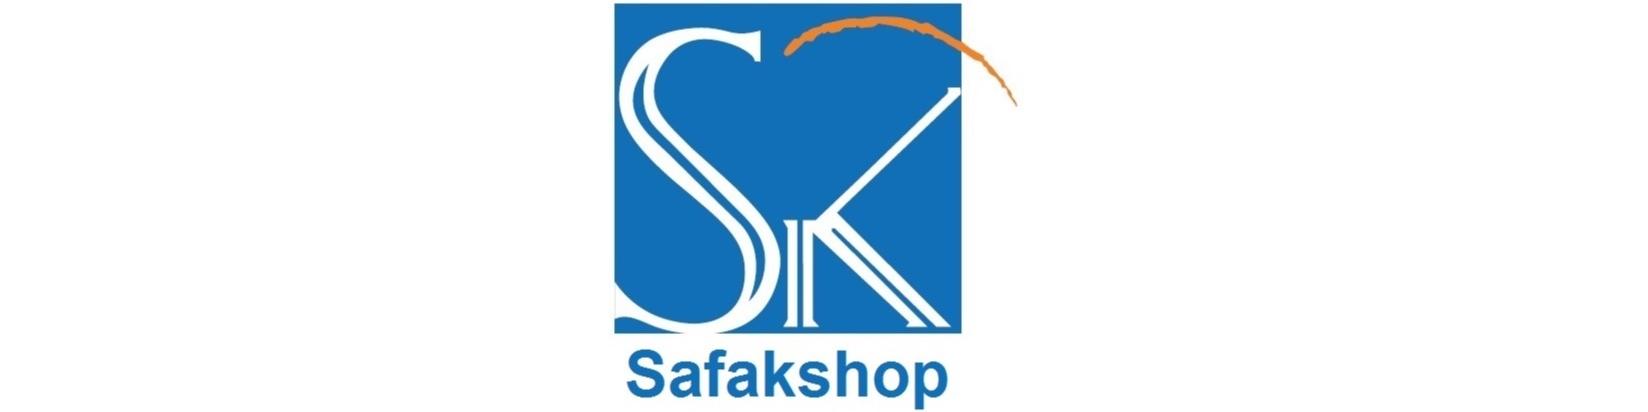 safakshop.de- Logo - Bewertungen